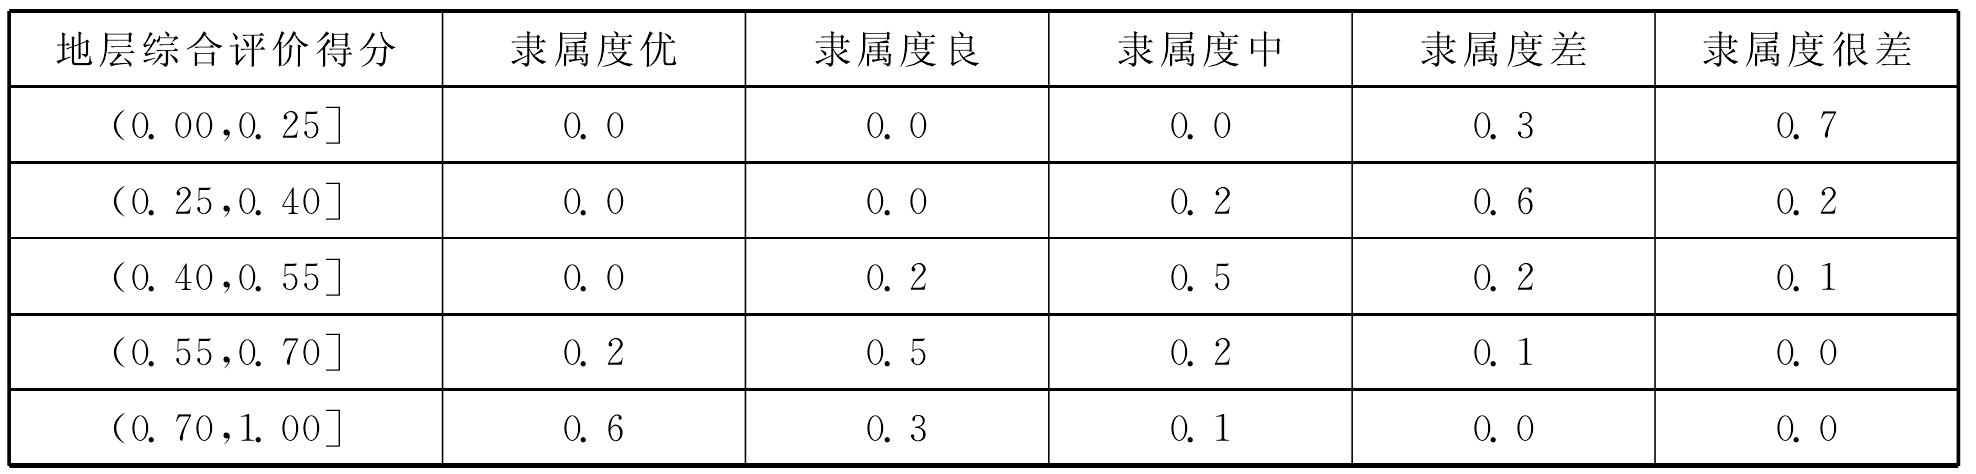 5.4 广州市工程建设适宜性评估模型